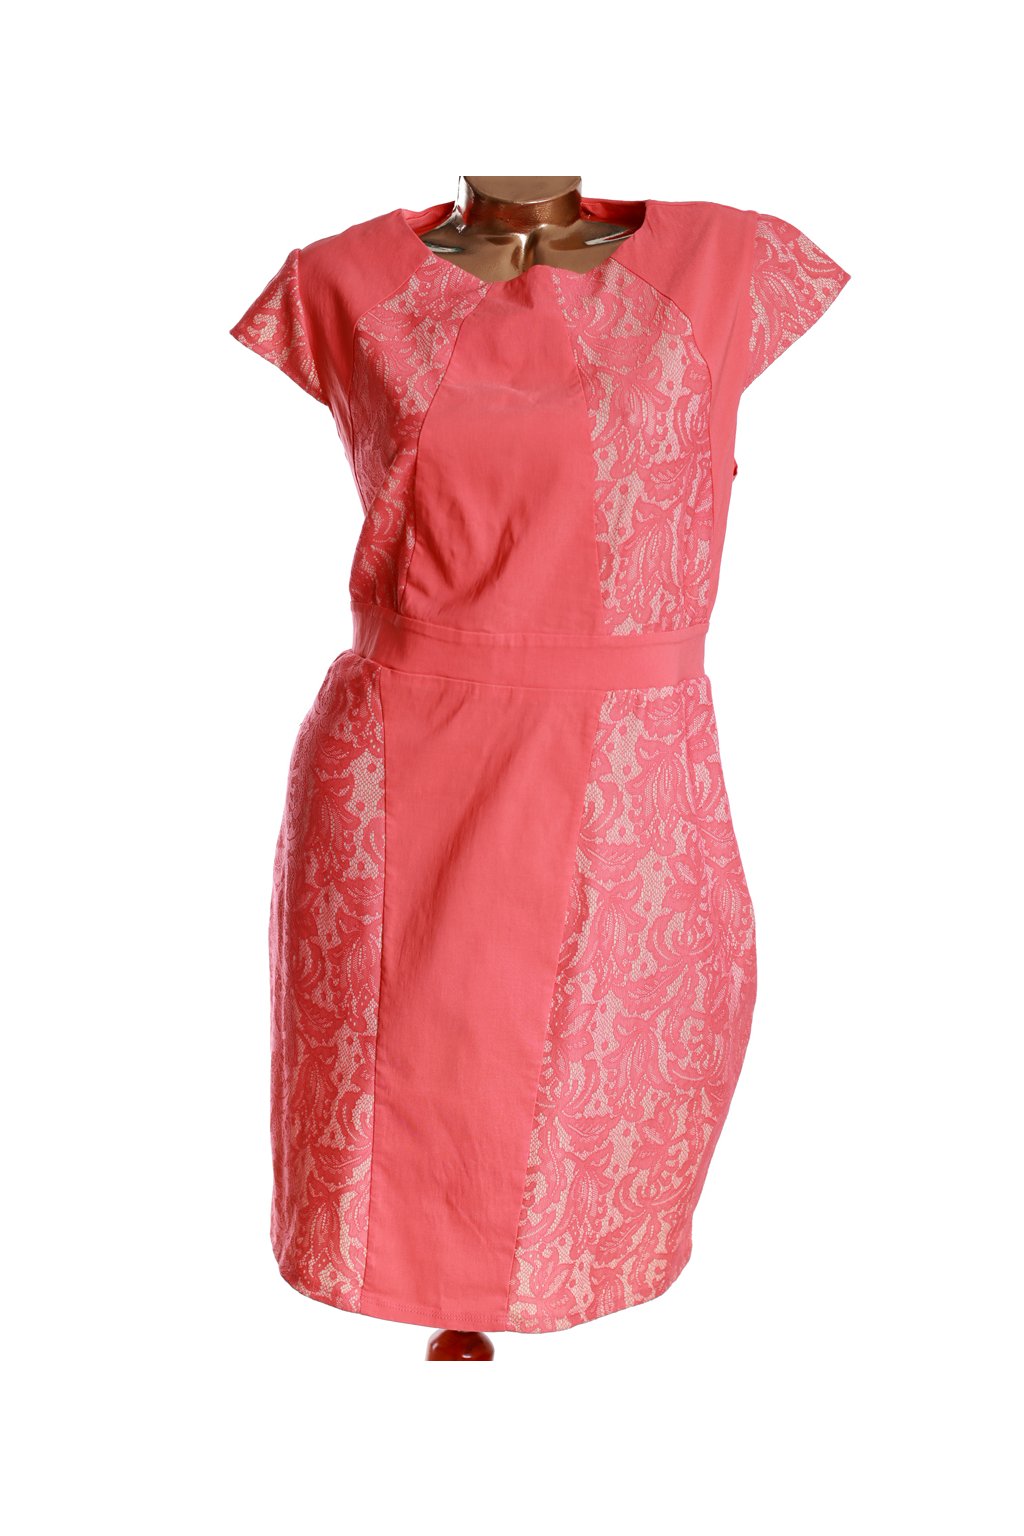 Dámské růžovo-krémové elegantní šaty s krajkou / DOROTHY PERKINS - XXXL (48/50) / ANGLIE